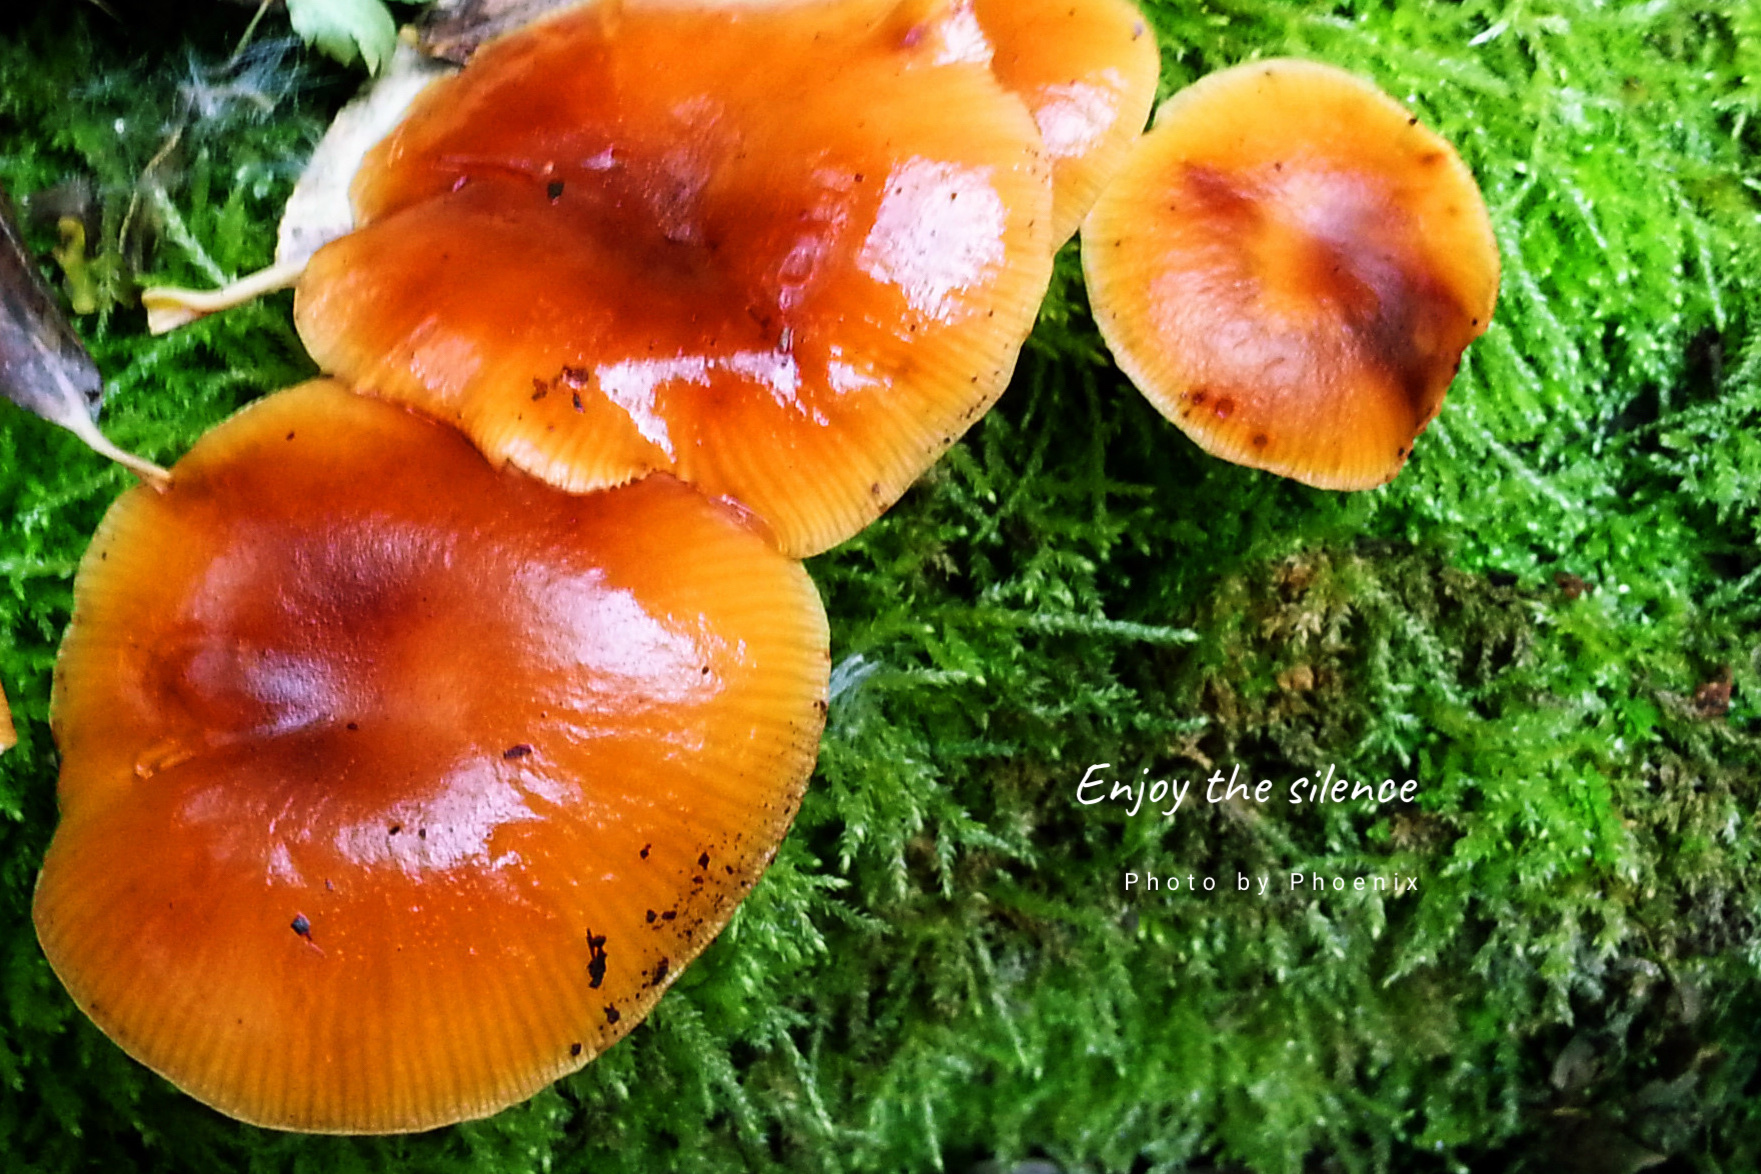 野生蘑菇:淡淡的清香,浓浓的味道